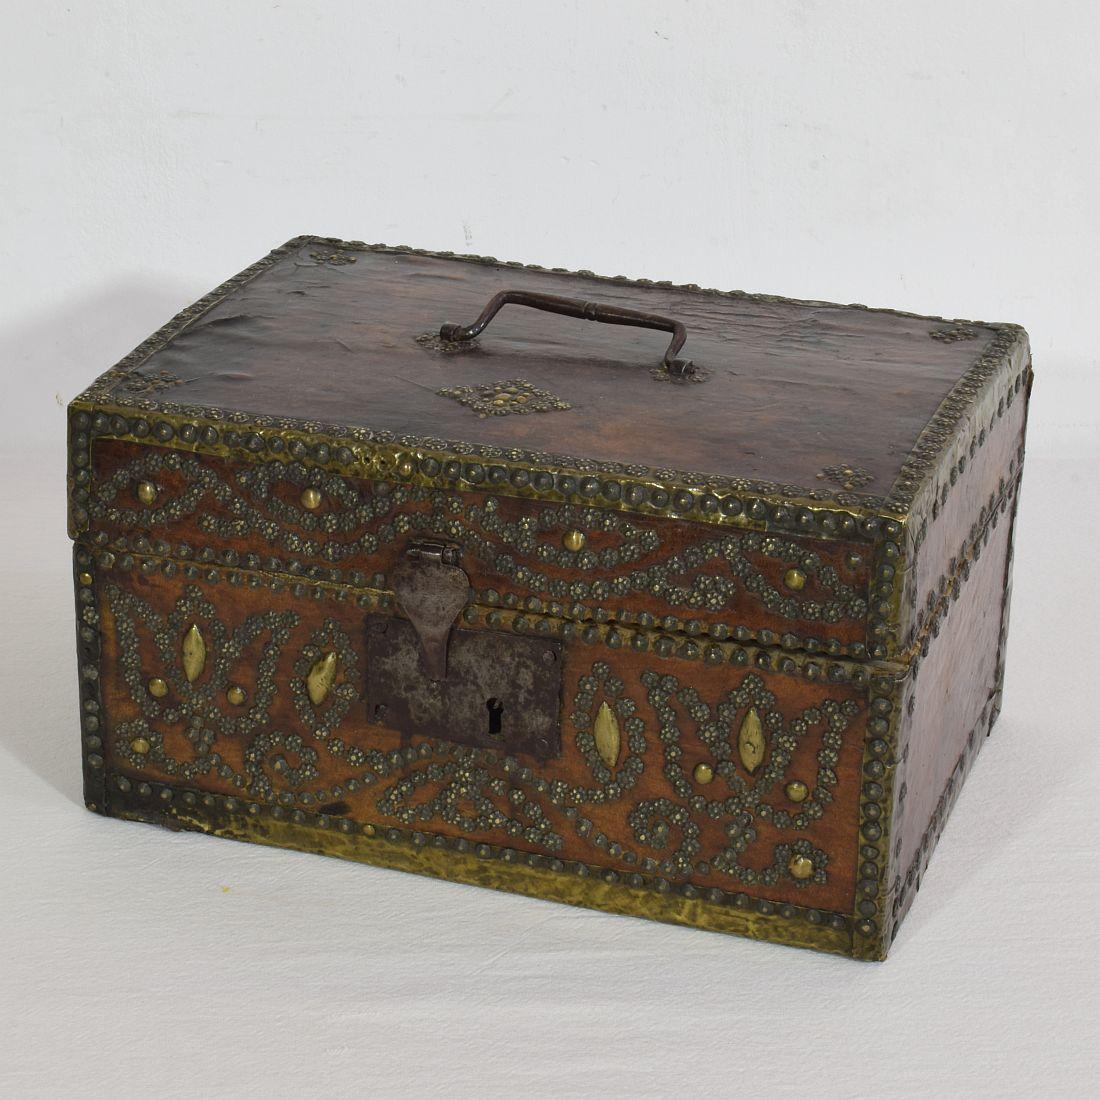 Sehr alte Kiste, die mit Leder bezogen und mit Eisen und Messing verziert ist. 
Seltener Fund.
Frankreich, um 1600-1700
Verwittert und einige Verluste.